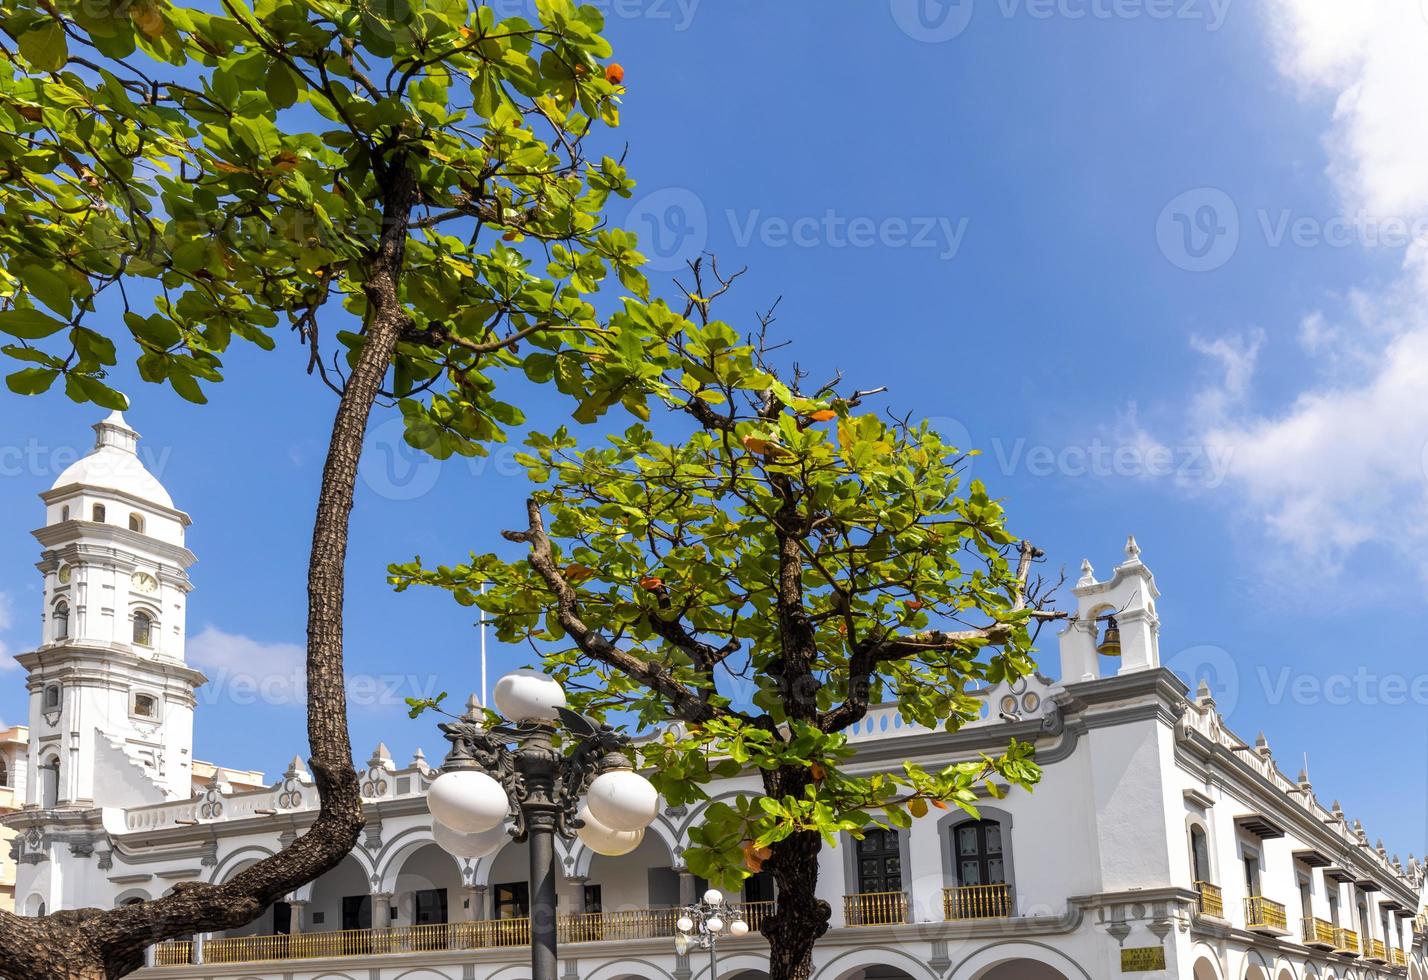 messico, palazzo municipale di veracruz e strade coloniali nel centro storico foto